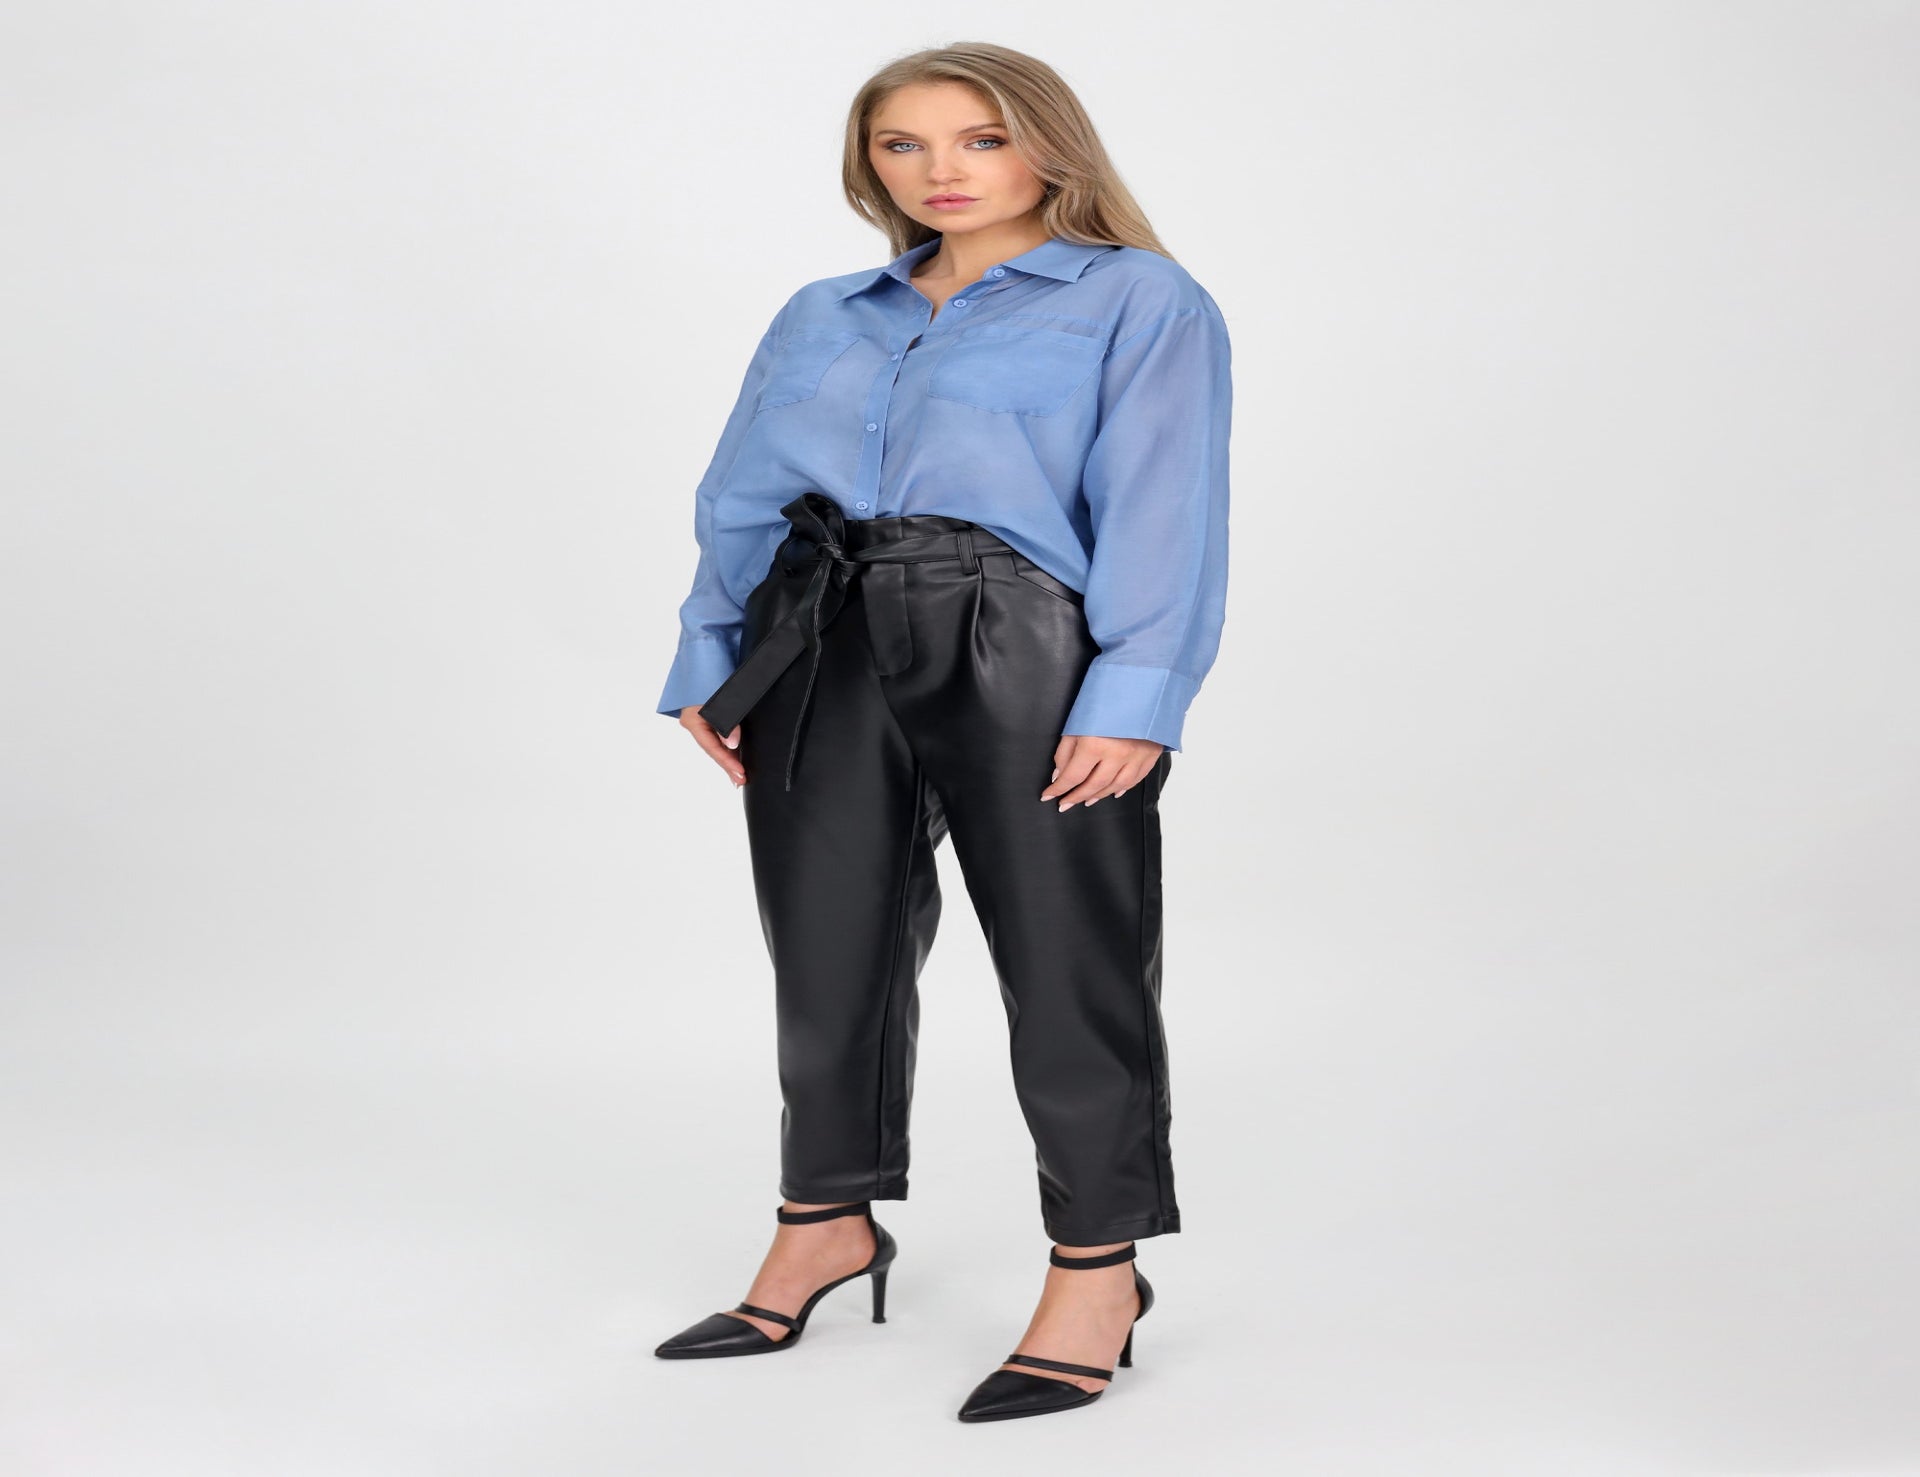 Silk Cotton Crop Shirt - Blue - Tops - Long Sleeve - Women's Clothing ...